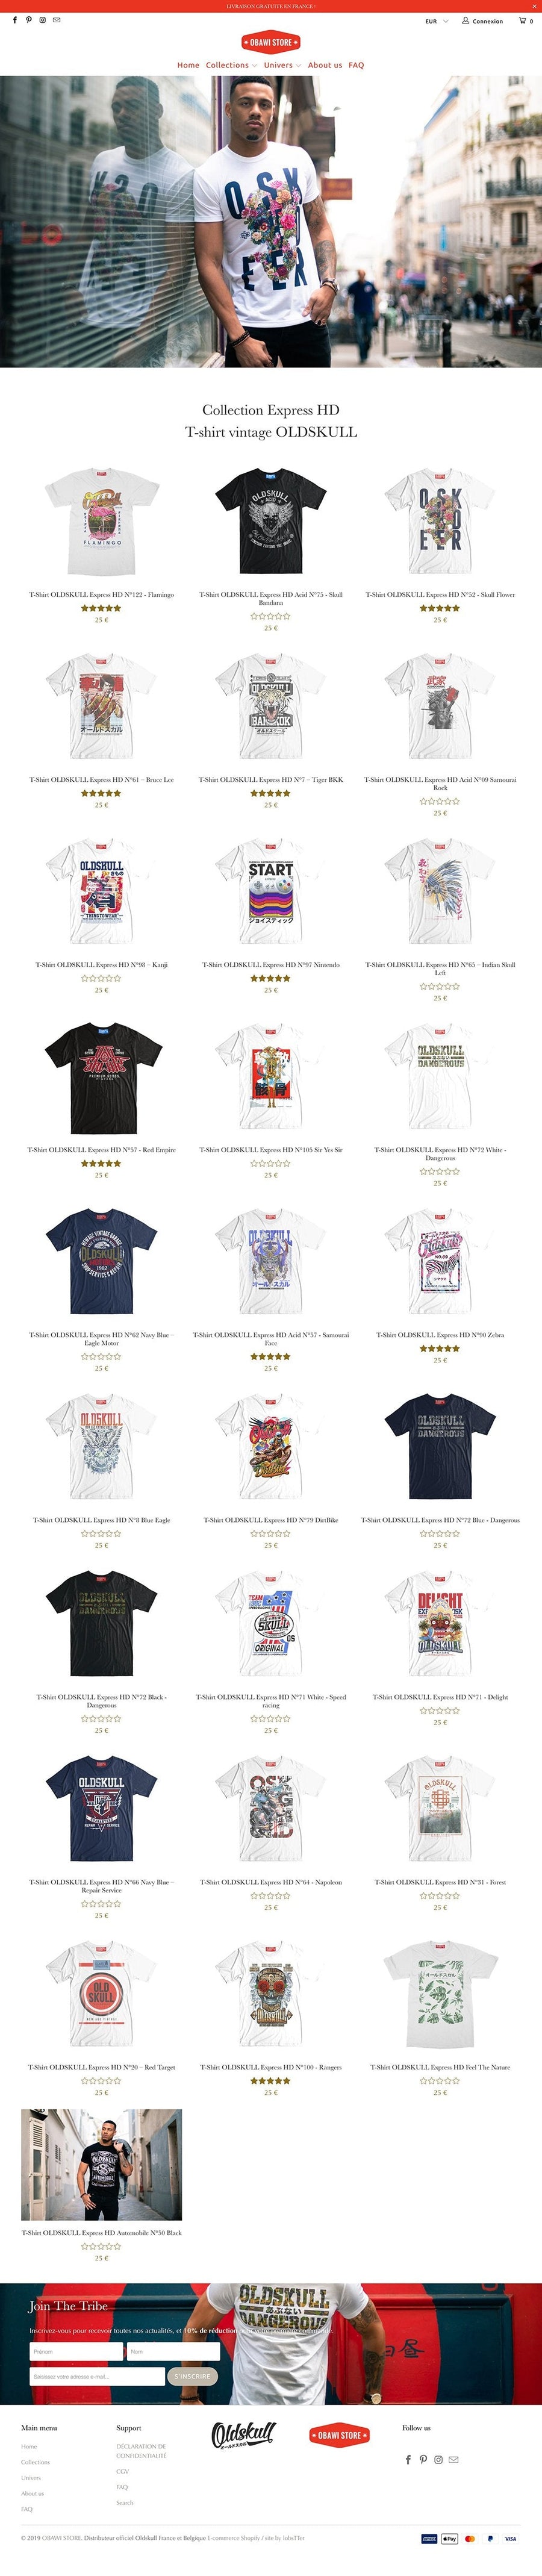 Obawi.com Création d'un site e-commerce de T-Shirts vintage Website et SEO lobsTTer avec 2 T Agence Shopify Plus & Expert Shopify